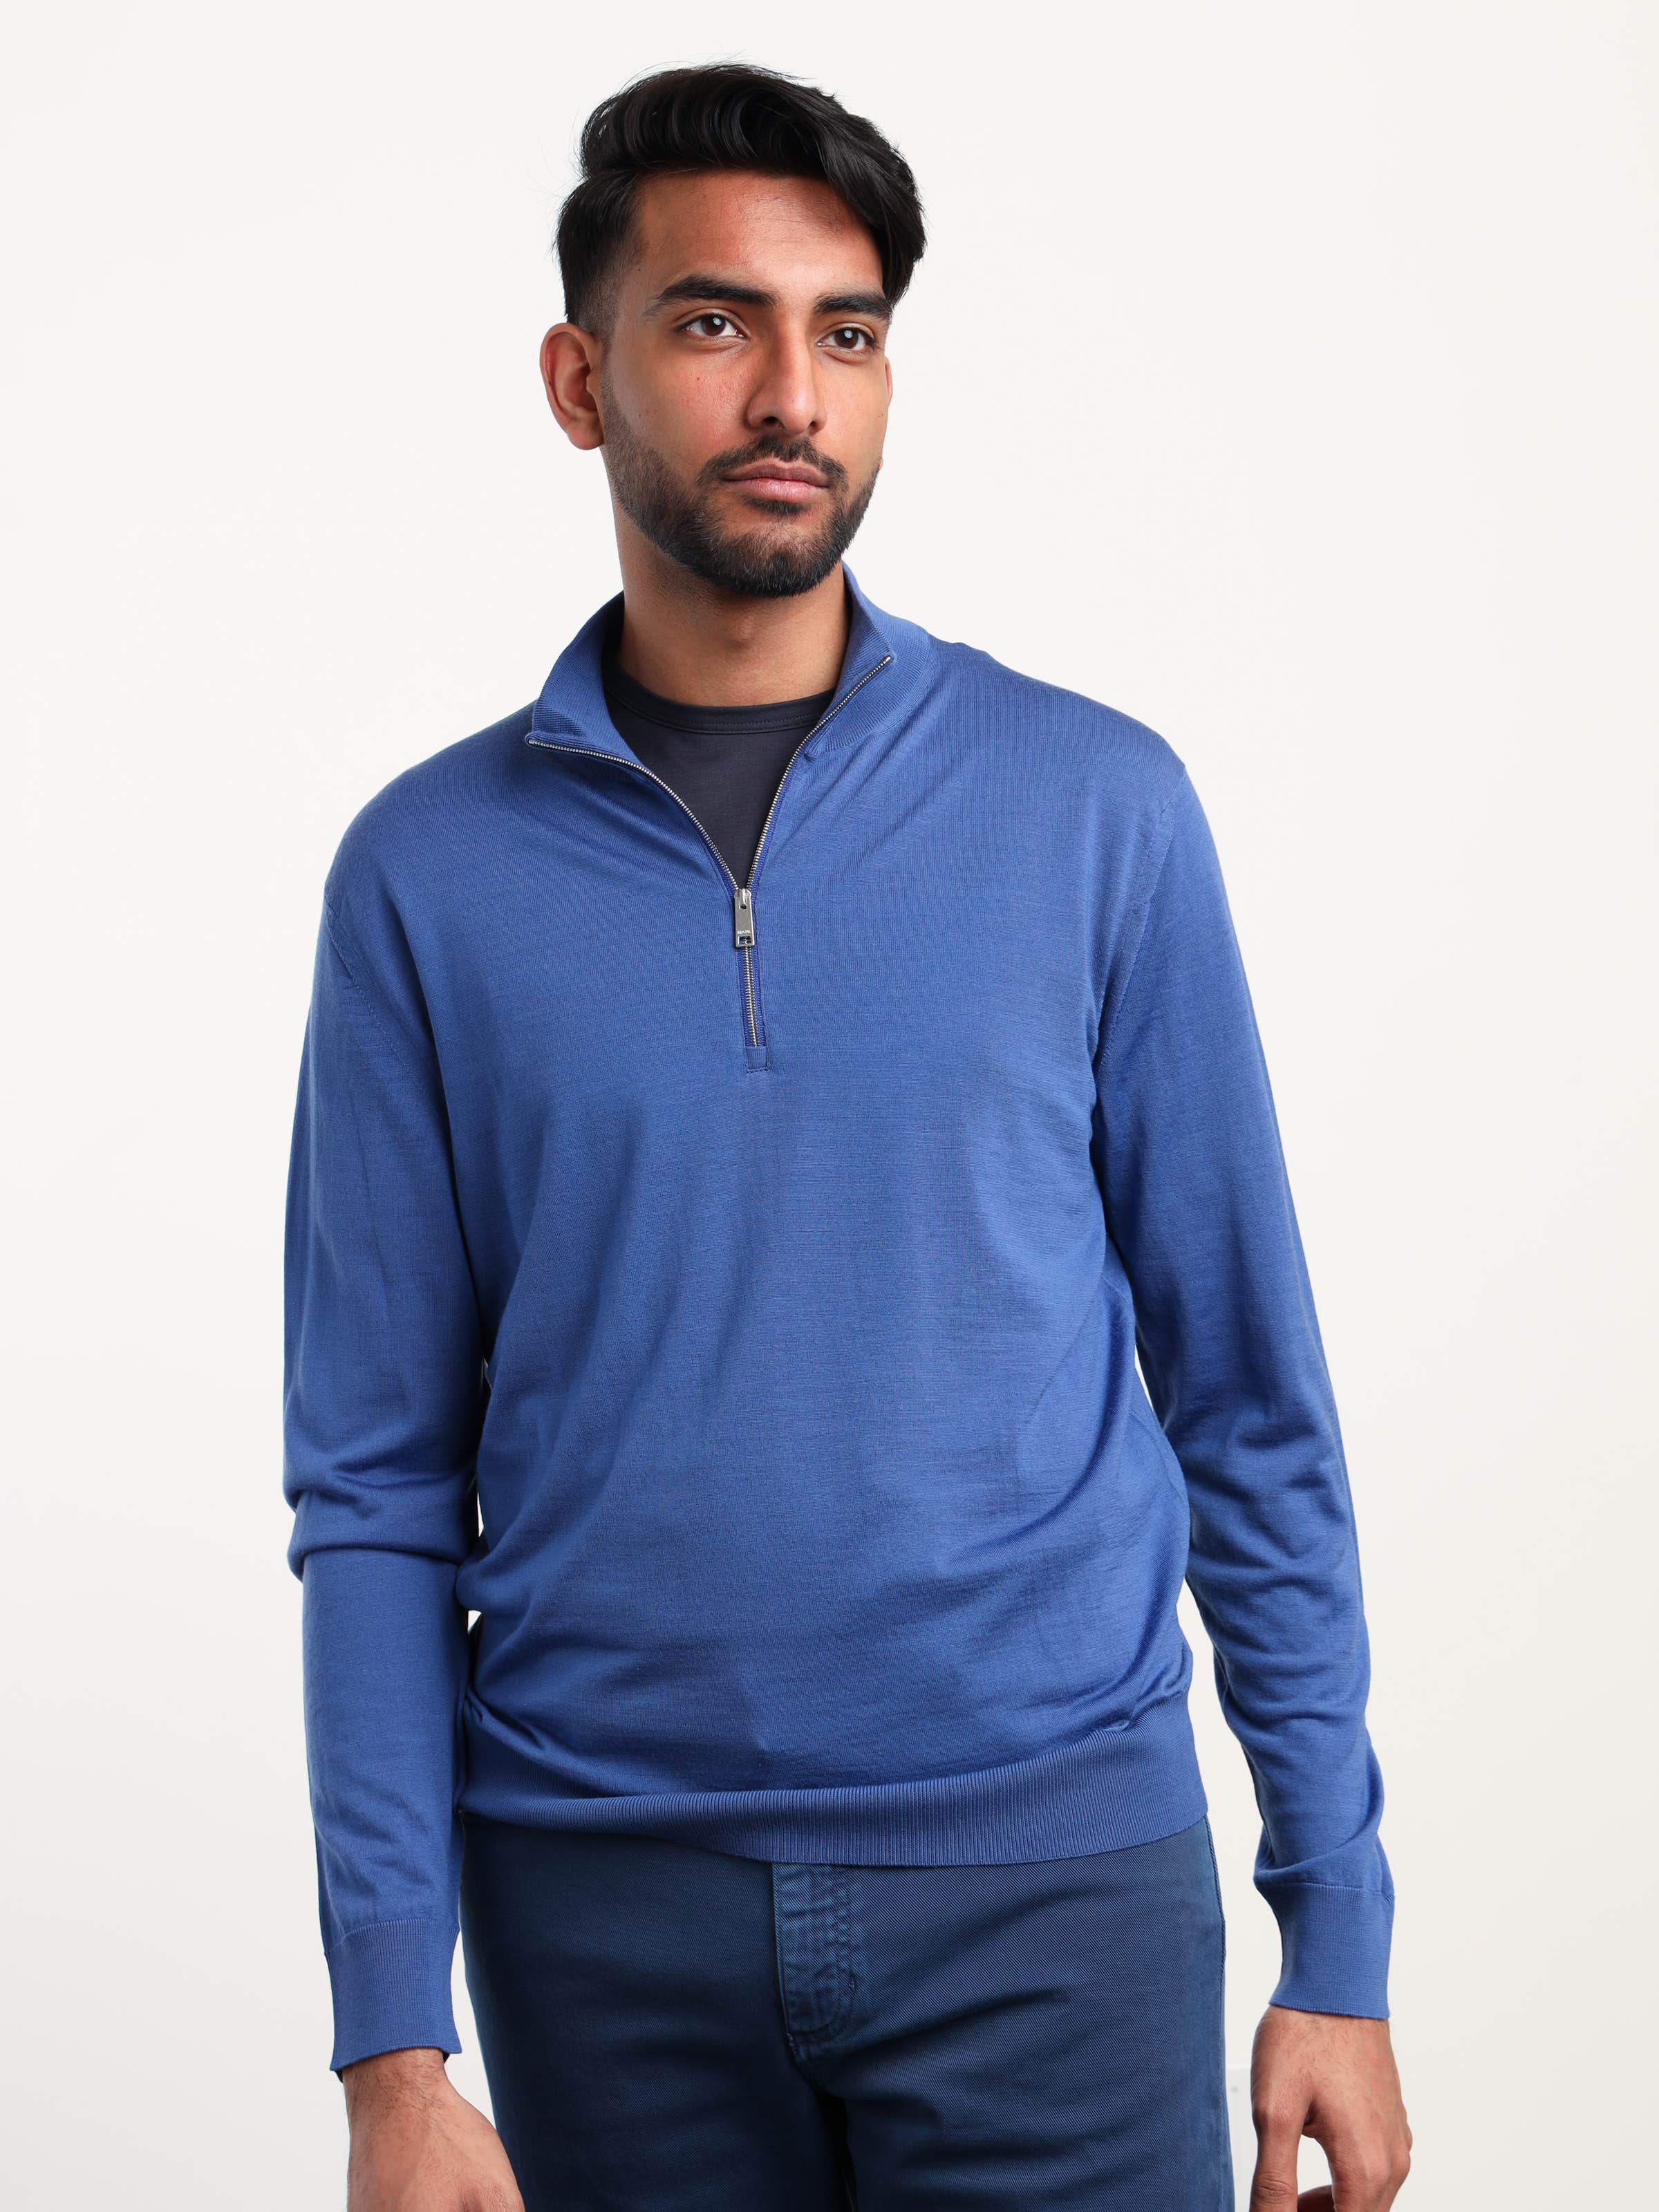 Blue Wool Quarter-Zip Sweater